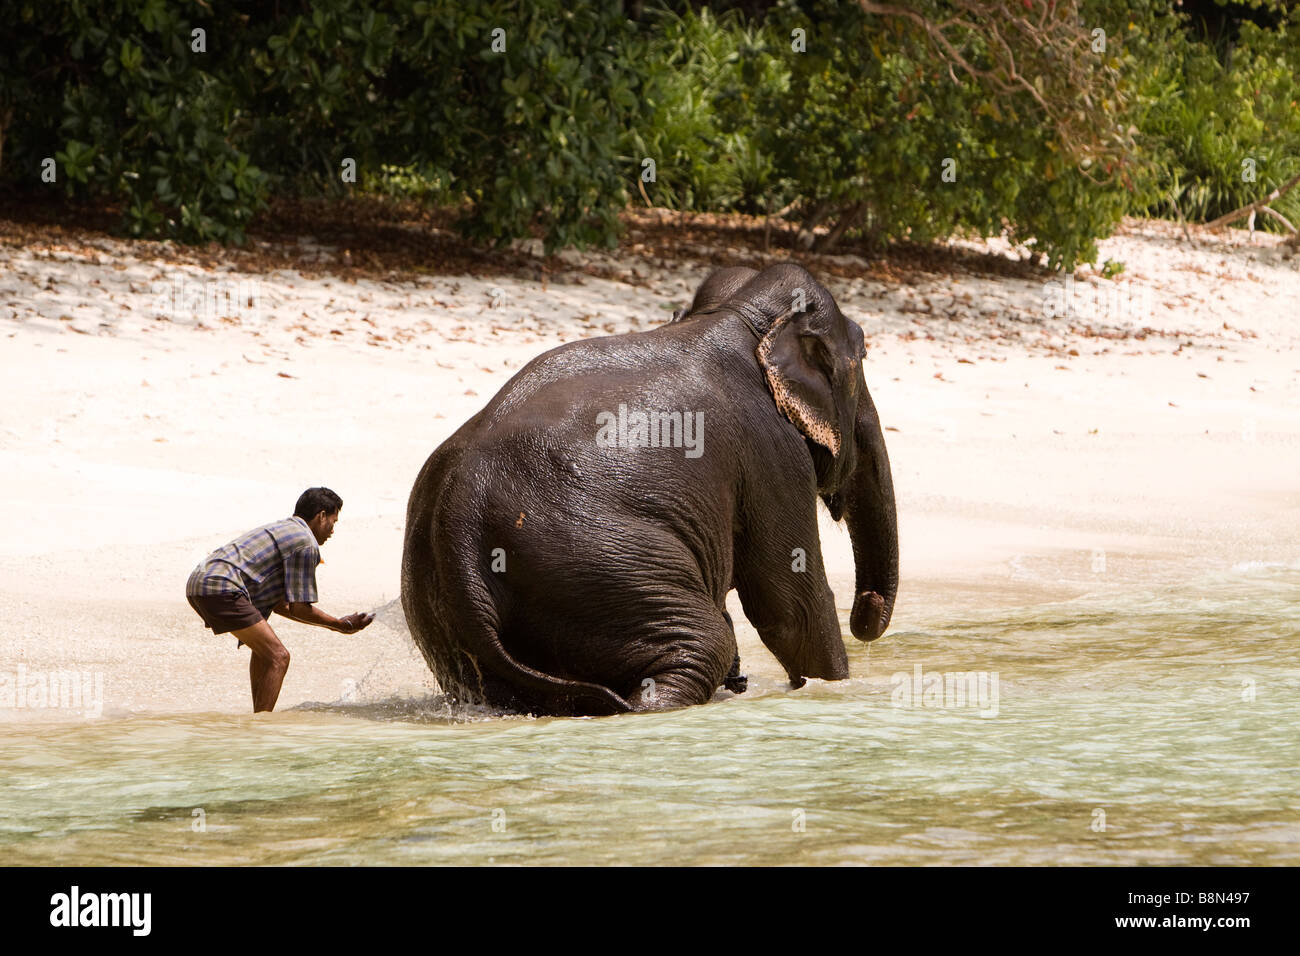 india-andaman-and-nicobar-havelock-island-mahout-washing-elephant-B8N497.jpg